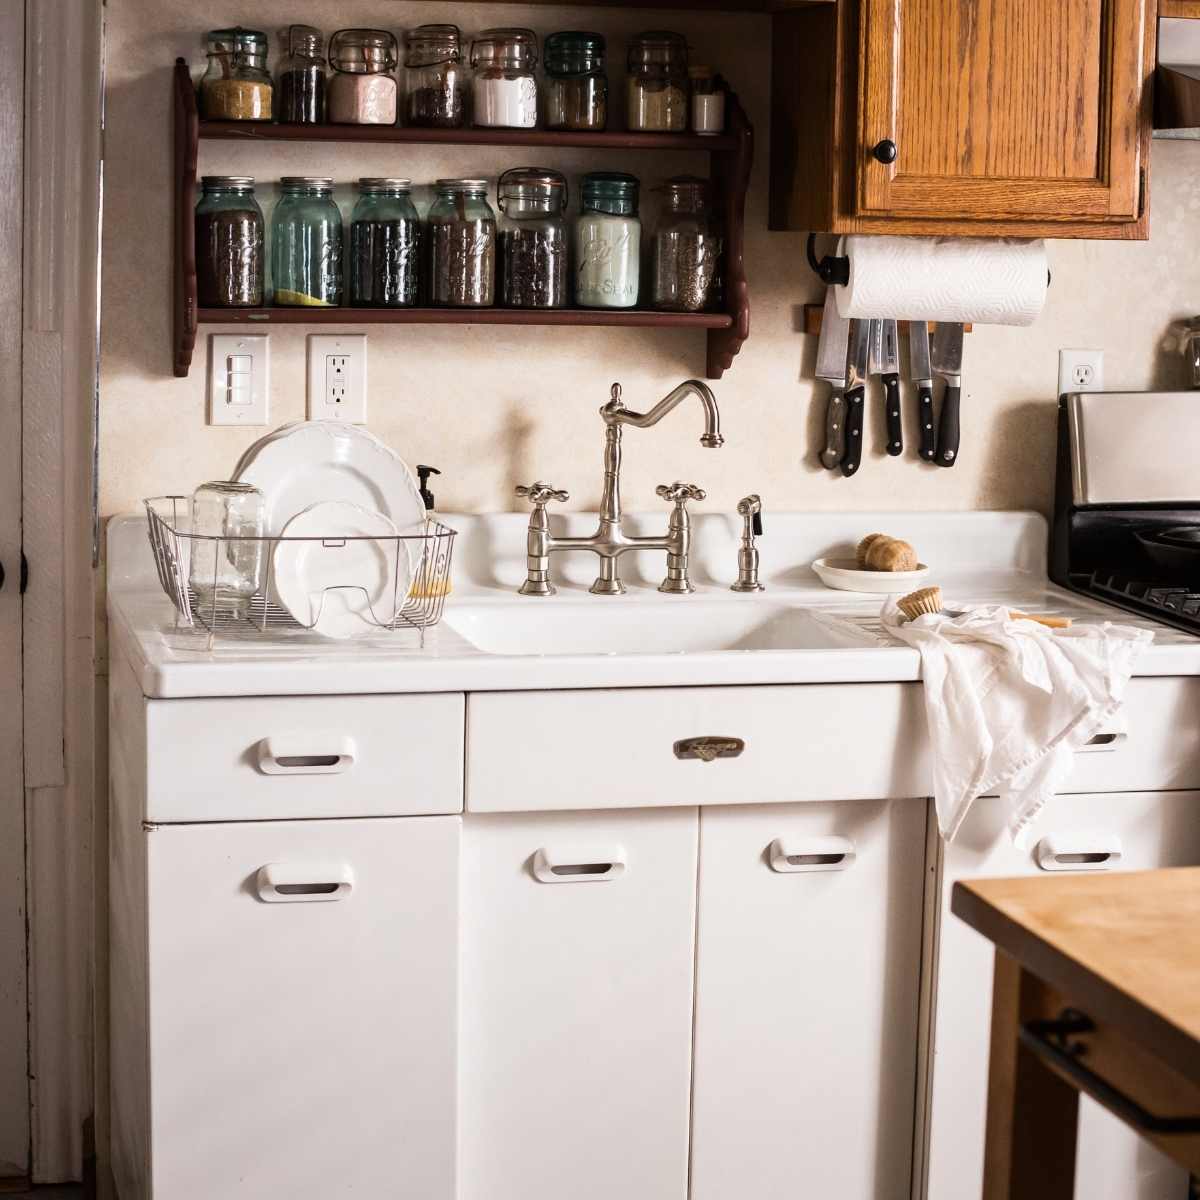 How to Organize Under a kitchen sink